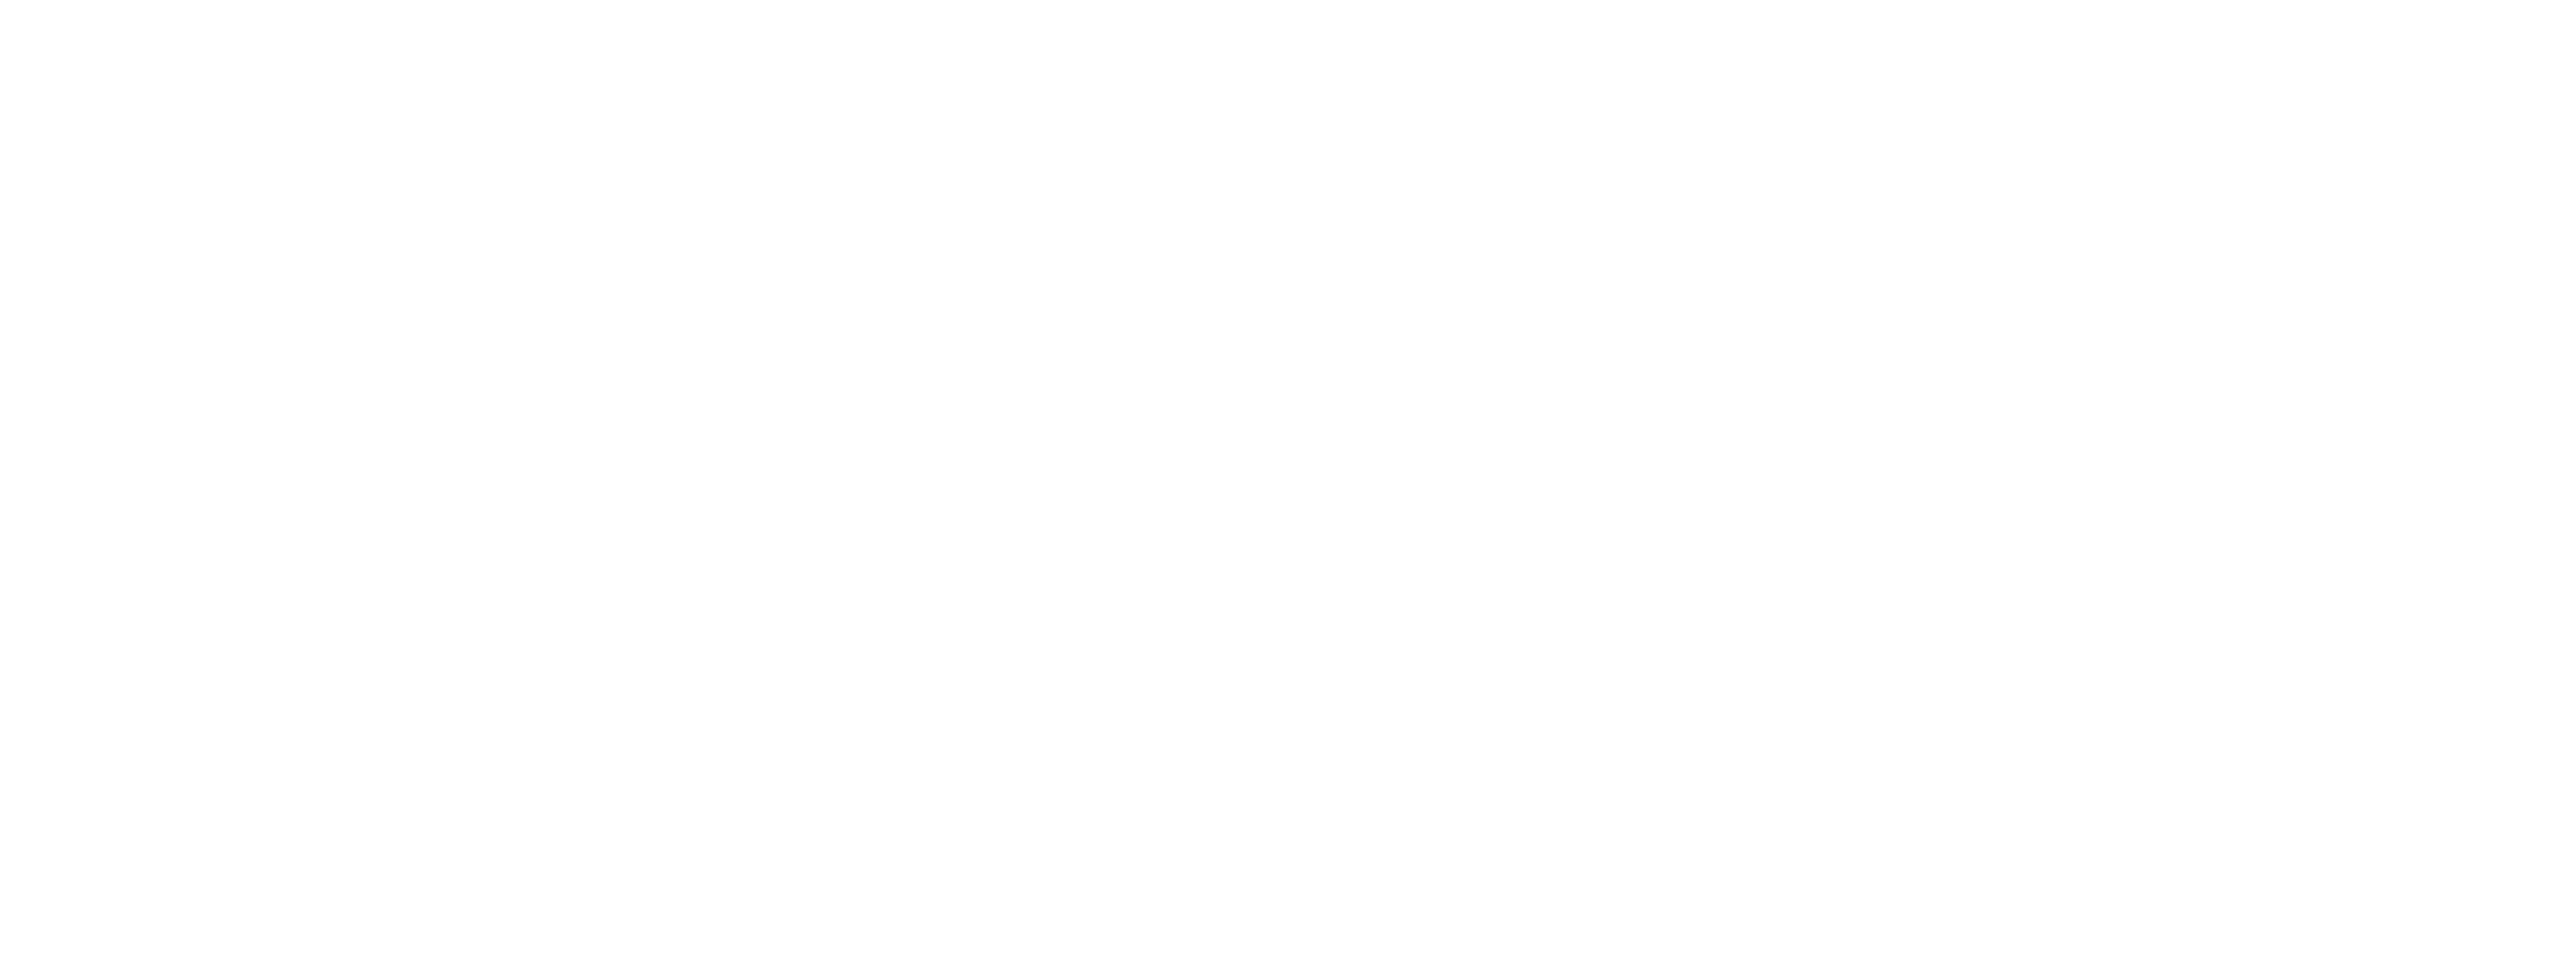 Voodoo Radio Online - Listen Live